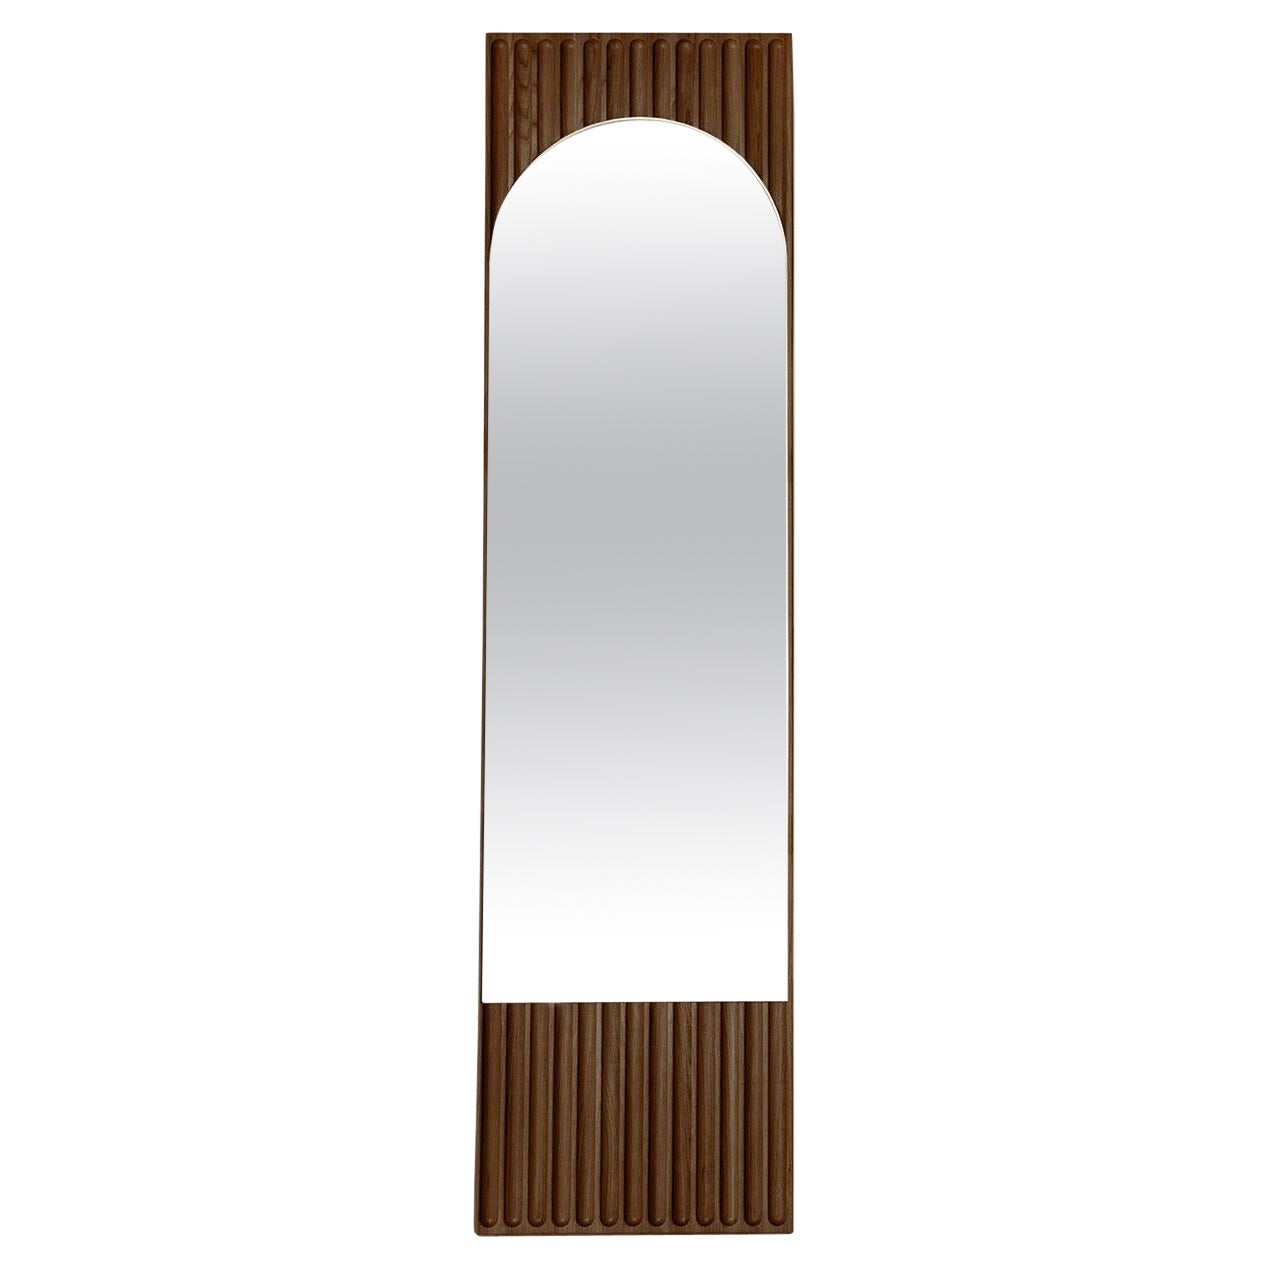 Sesto, rechteckiger Spiegel aus Massivholz, Esche in brauner Oberfläche, zeitgenössisch